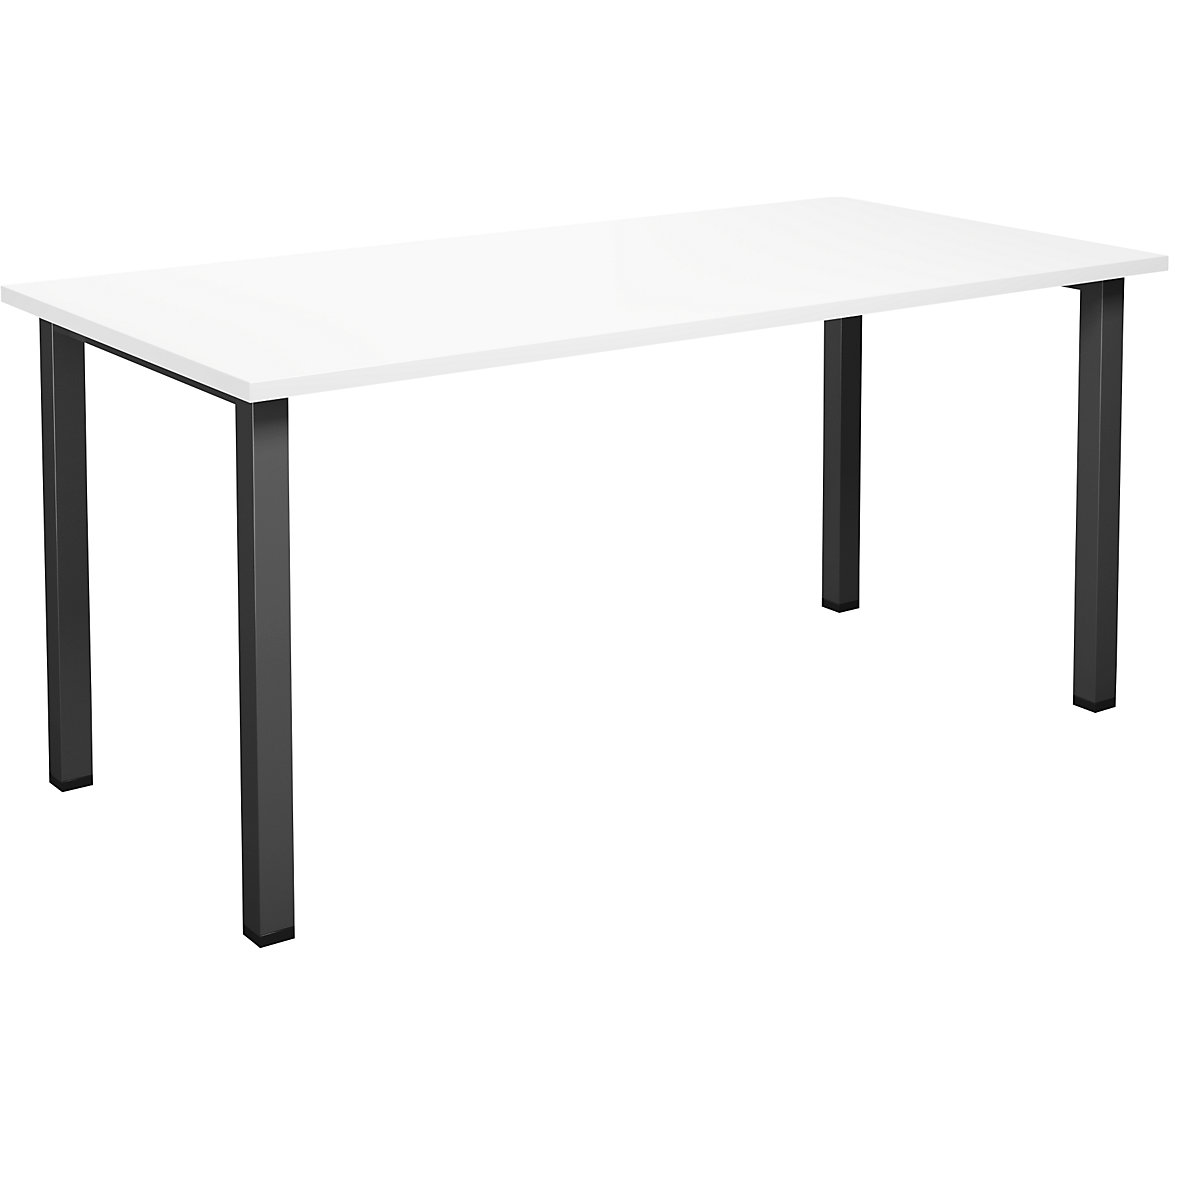 DUO-U multi-purpose desk, straight tabletop, WxD 1600 x 800 mm, white, black-11